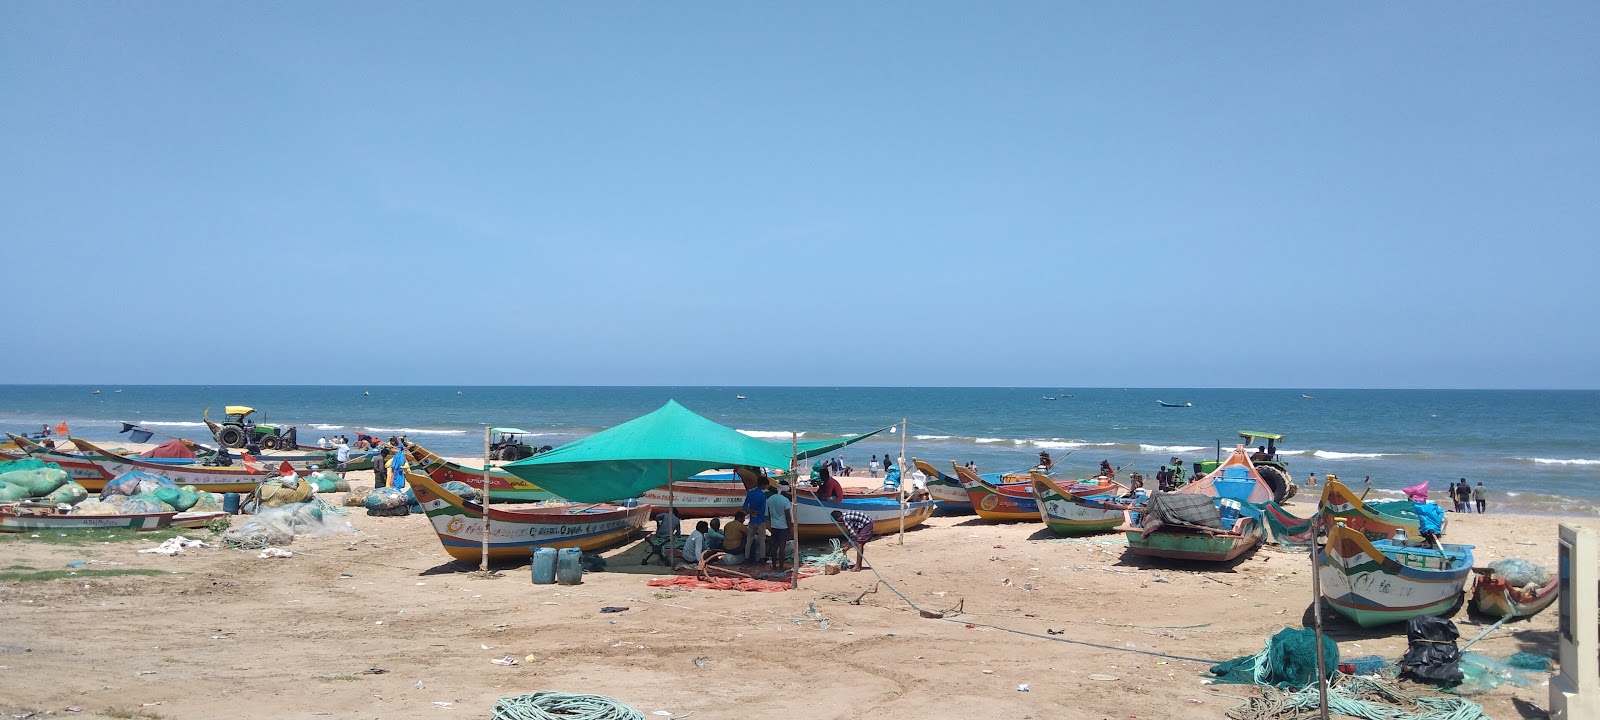 Kothapatnam Beach'in fotoğrafı ve yerleşim